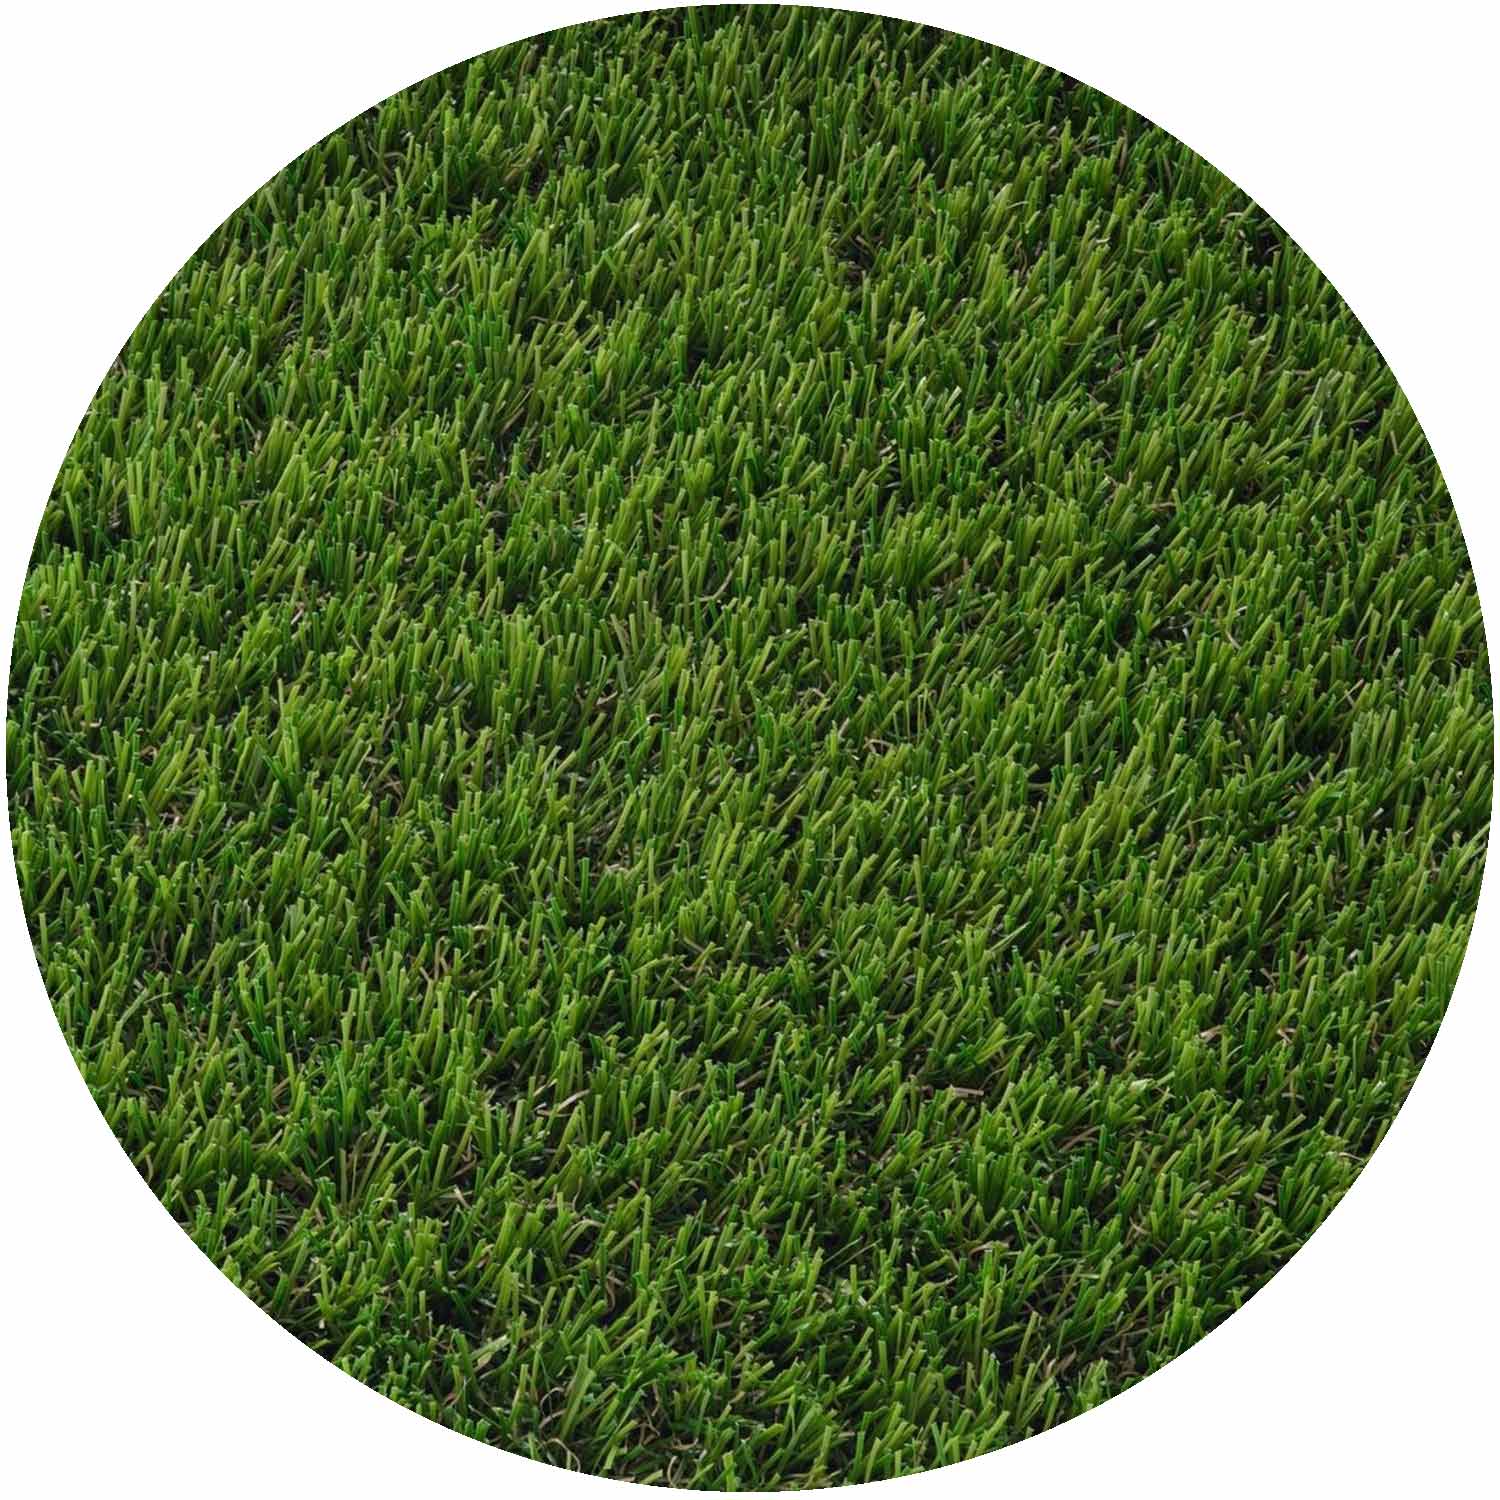 Blitz 37mm Pile Artificial Grass per mtr